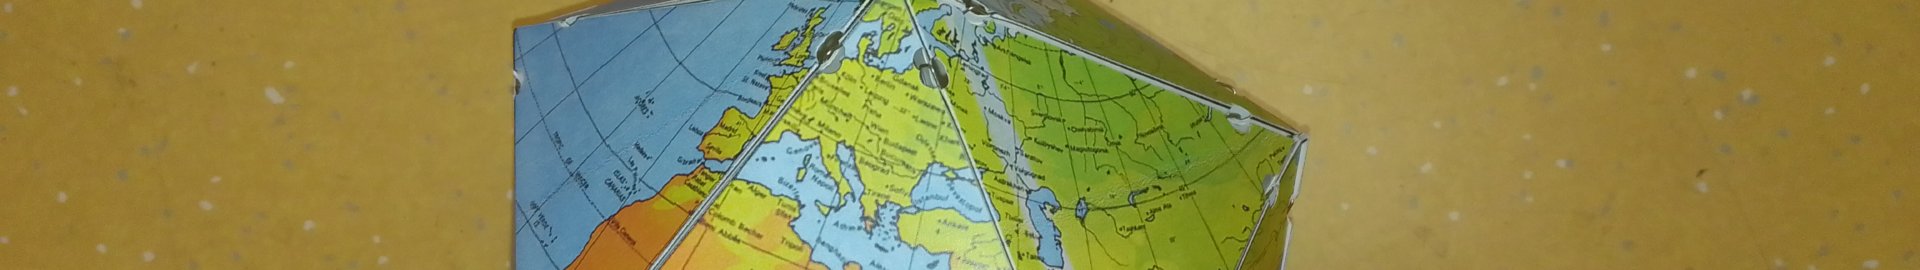 Dymaxion World Map